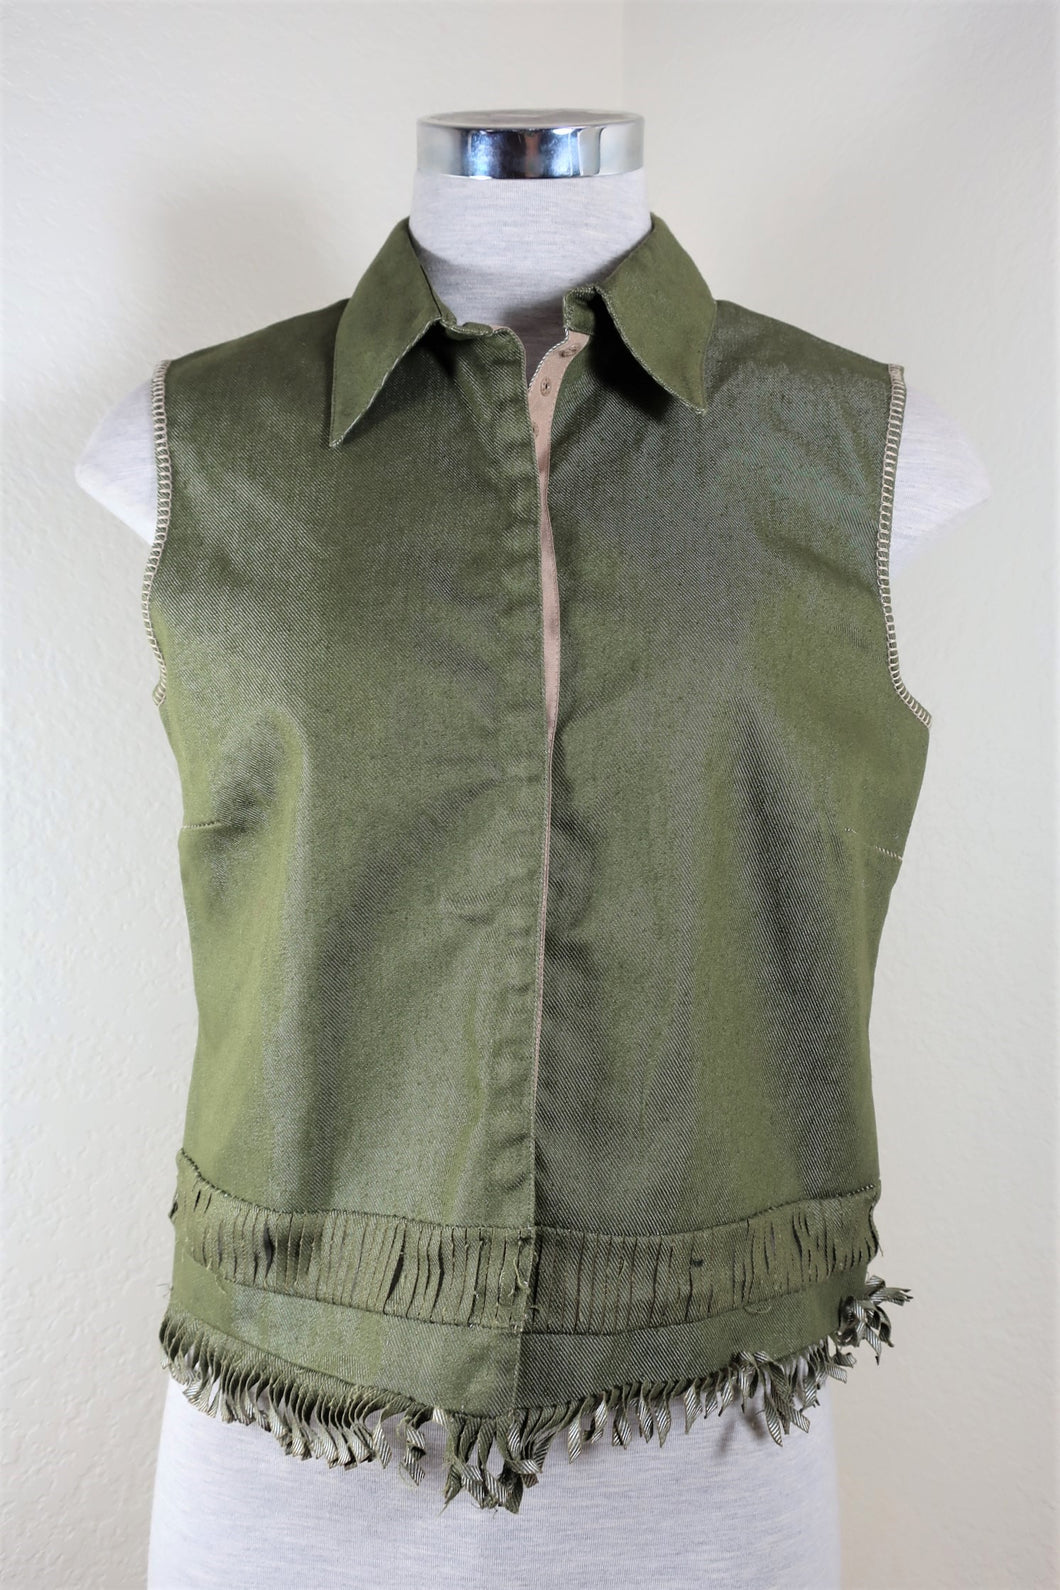 NWT New ALBERTA FERRETTI Green Fringes Button Cotton Vest Top Blazer Small 38 4 5 6